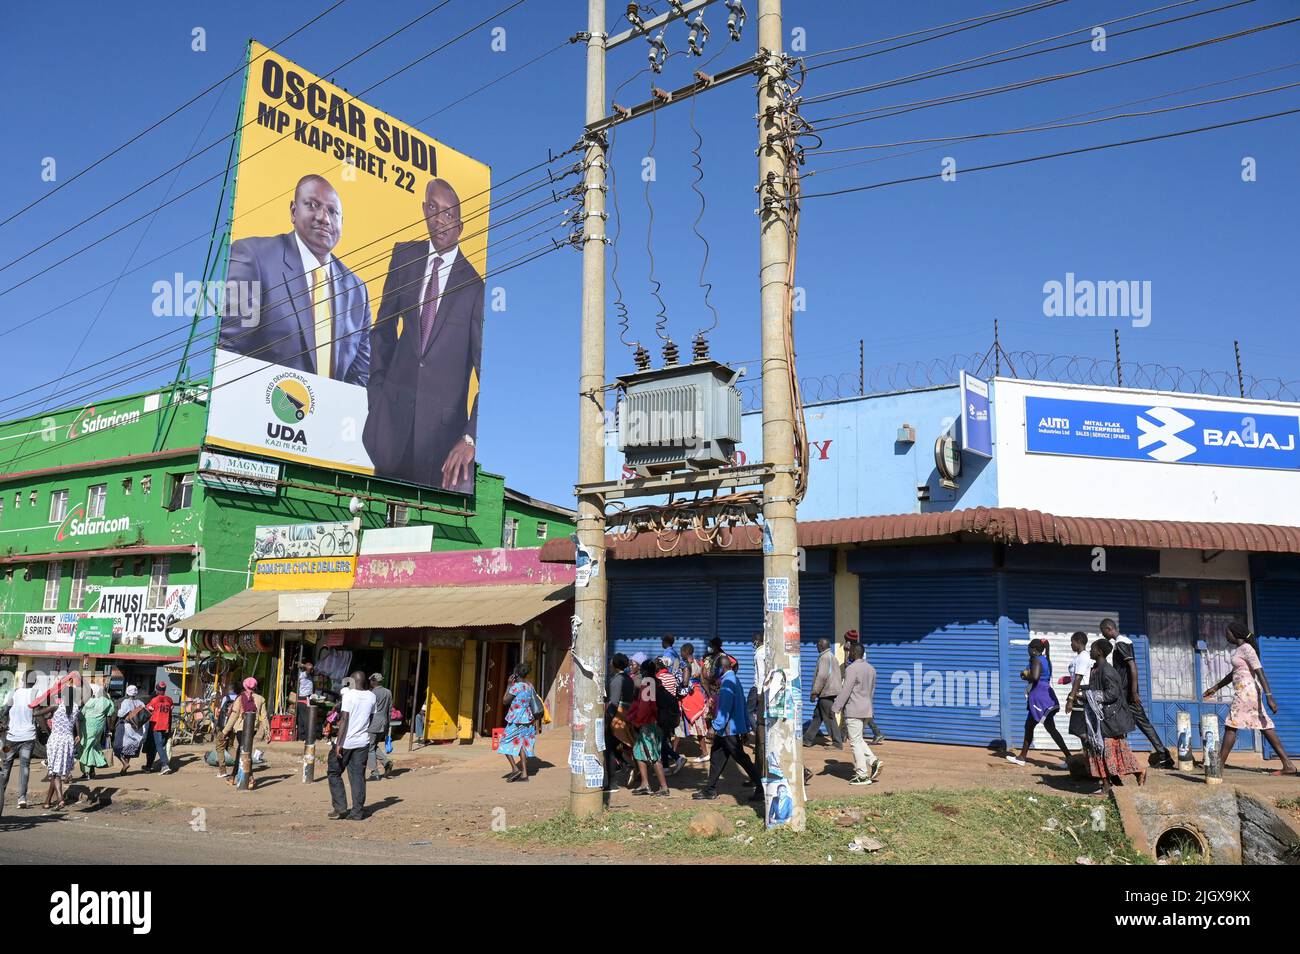 KENIA, Eldoret, Stadtzentrum, Plakatwand der United Democratic Alliance (UDA), ursprünglich Partei der Entwicklung und Reformen genannt, gegründet von William Ruto / KENIA, Eldoret, Stadtzentrum, Wahlwerbung der UDA für Wahlen 2022, Schubkarren Symbol Stockfoto